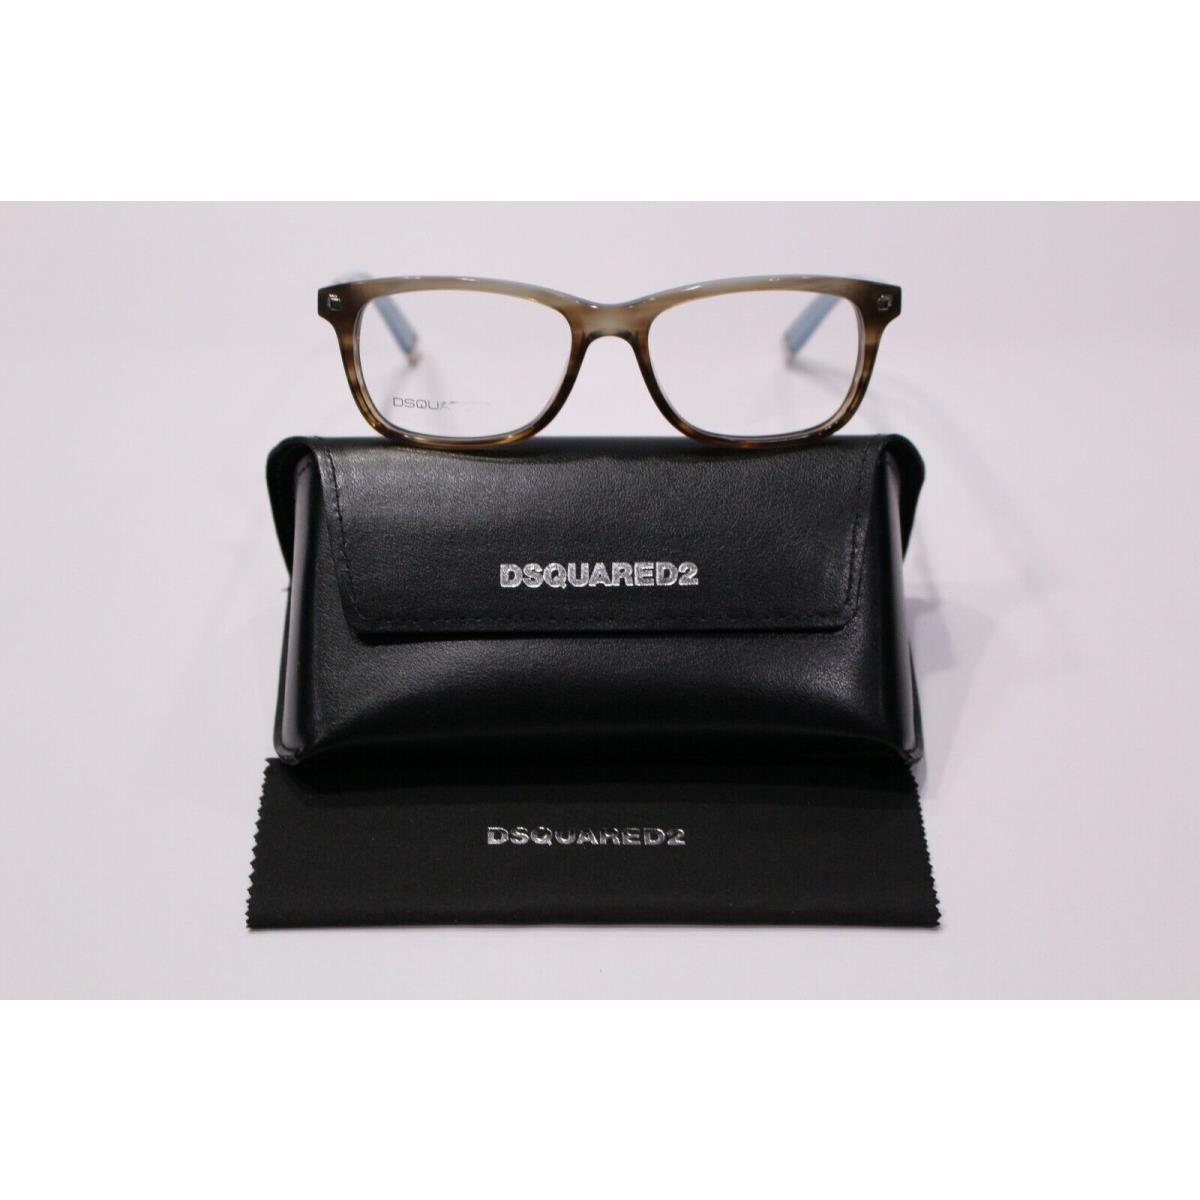 Dsquared2 DQ5052 047 Brown/blue Rectangle 52-16-145mm Full Rim Unisex Eyeglasses